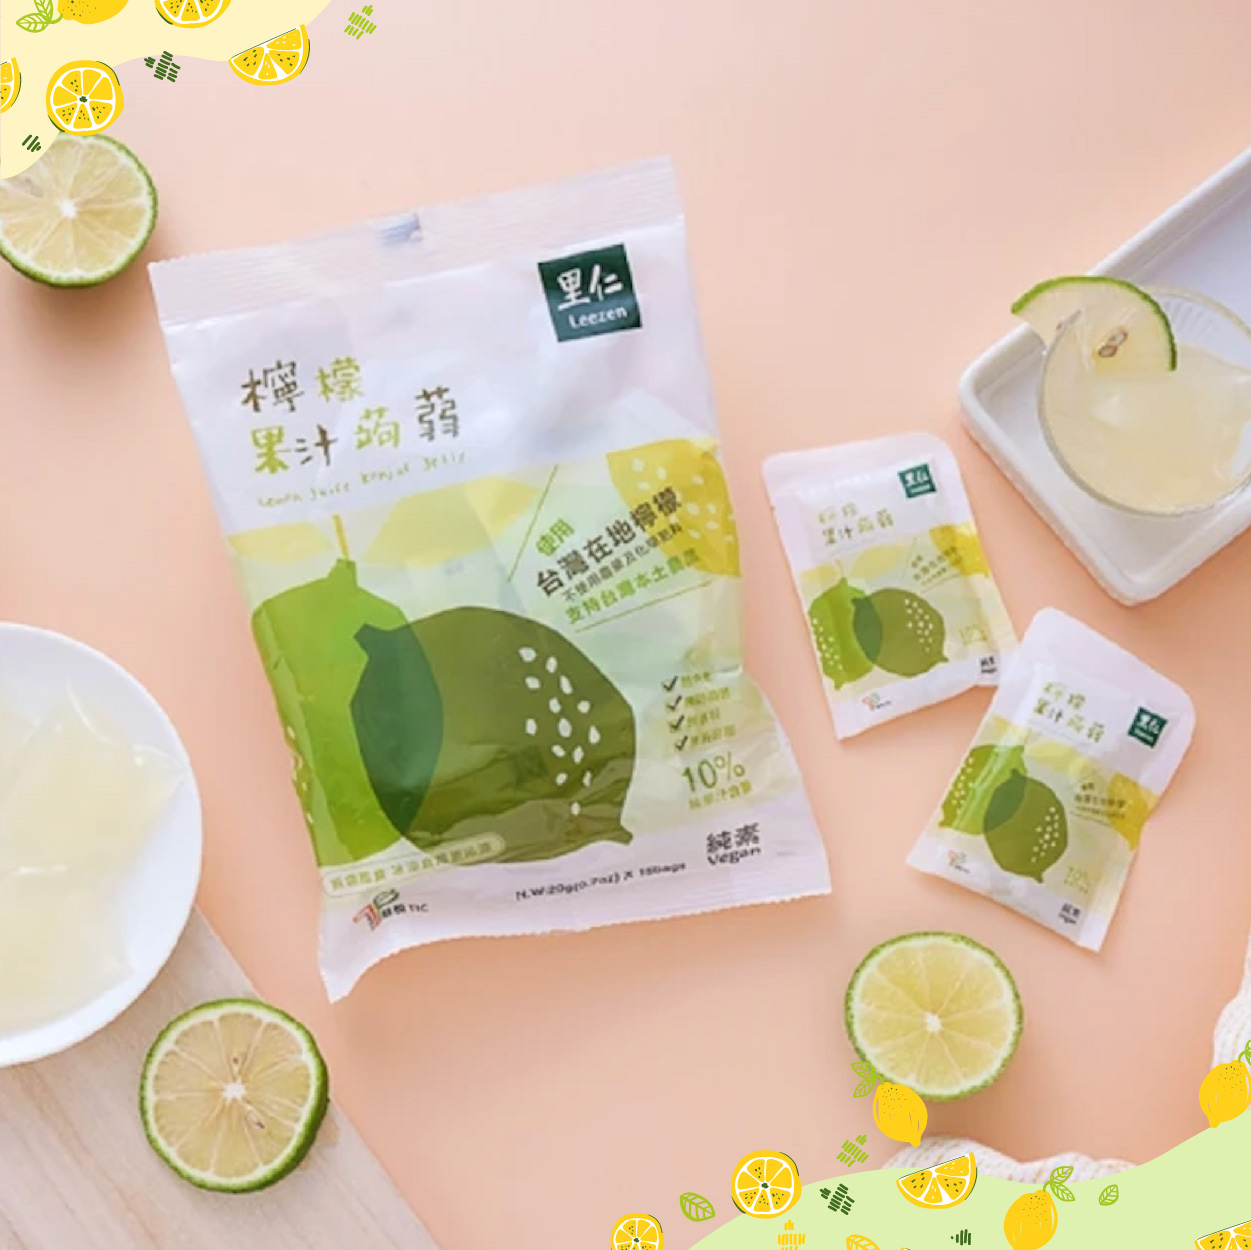 里仁	檸檬果汁蒟蒻 使用台灣無毒檸檬 酸甜好滋味 低卡無負擔